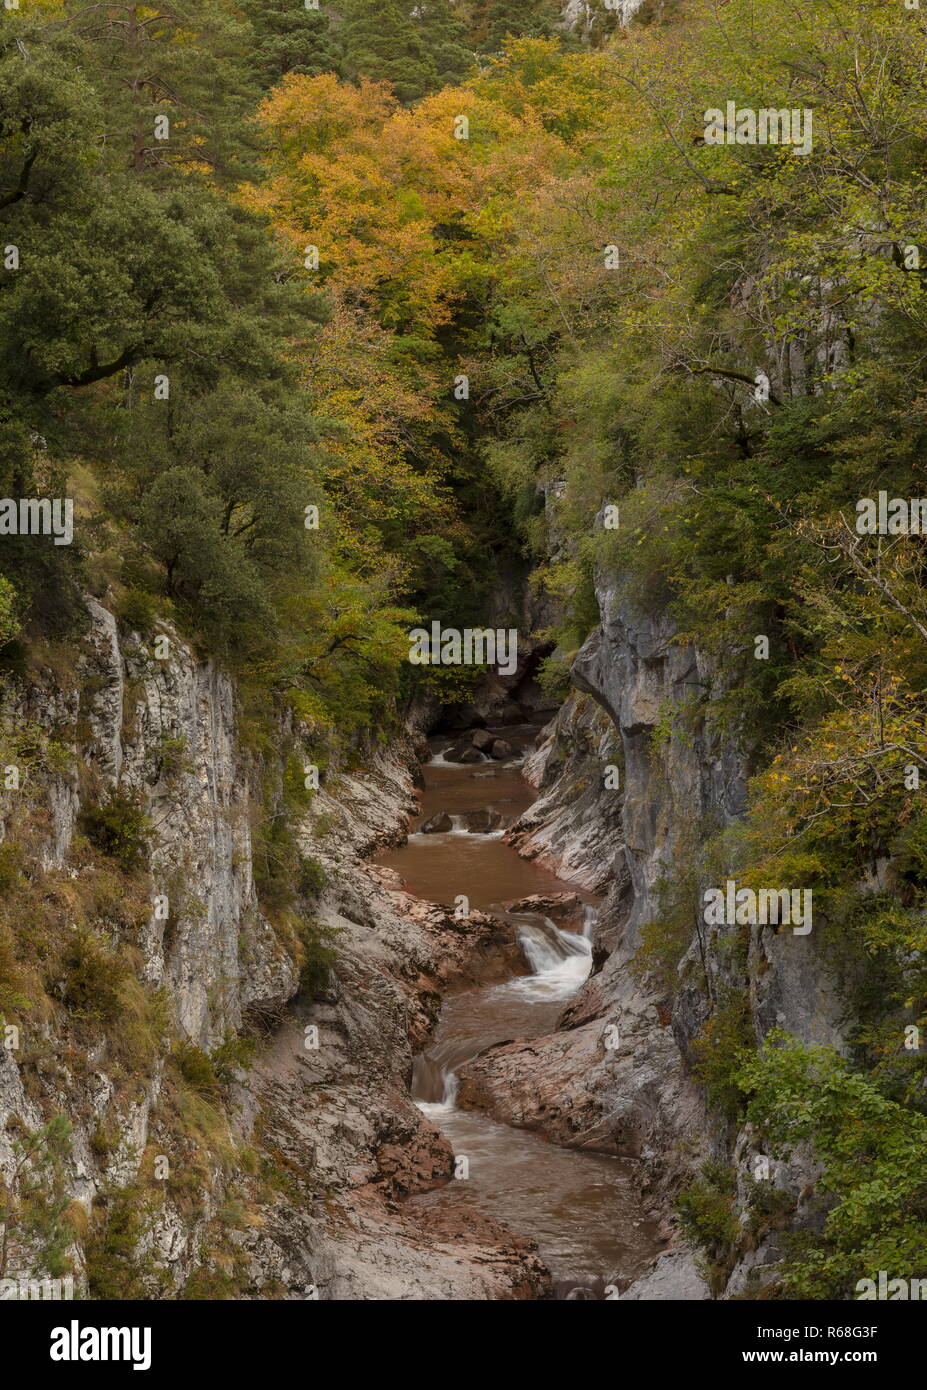 Gorge sur la rivière Aragon, la Boca del Infierno, en automne, dans la Selva de Oza, Pyrénées espagnoles, Aragon. L'Espagne. Banque D'Images